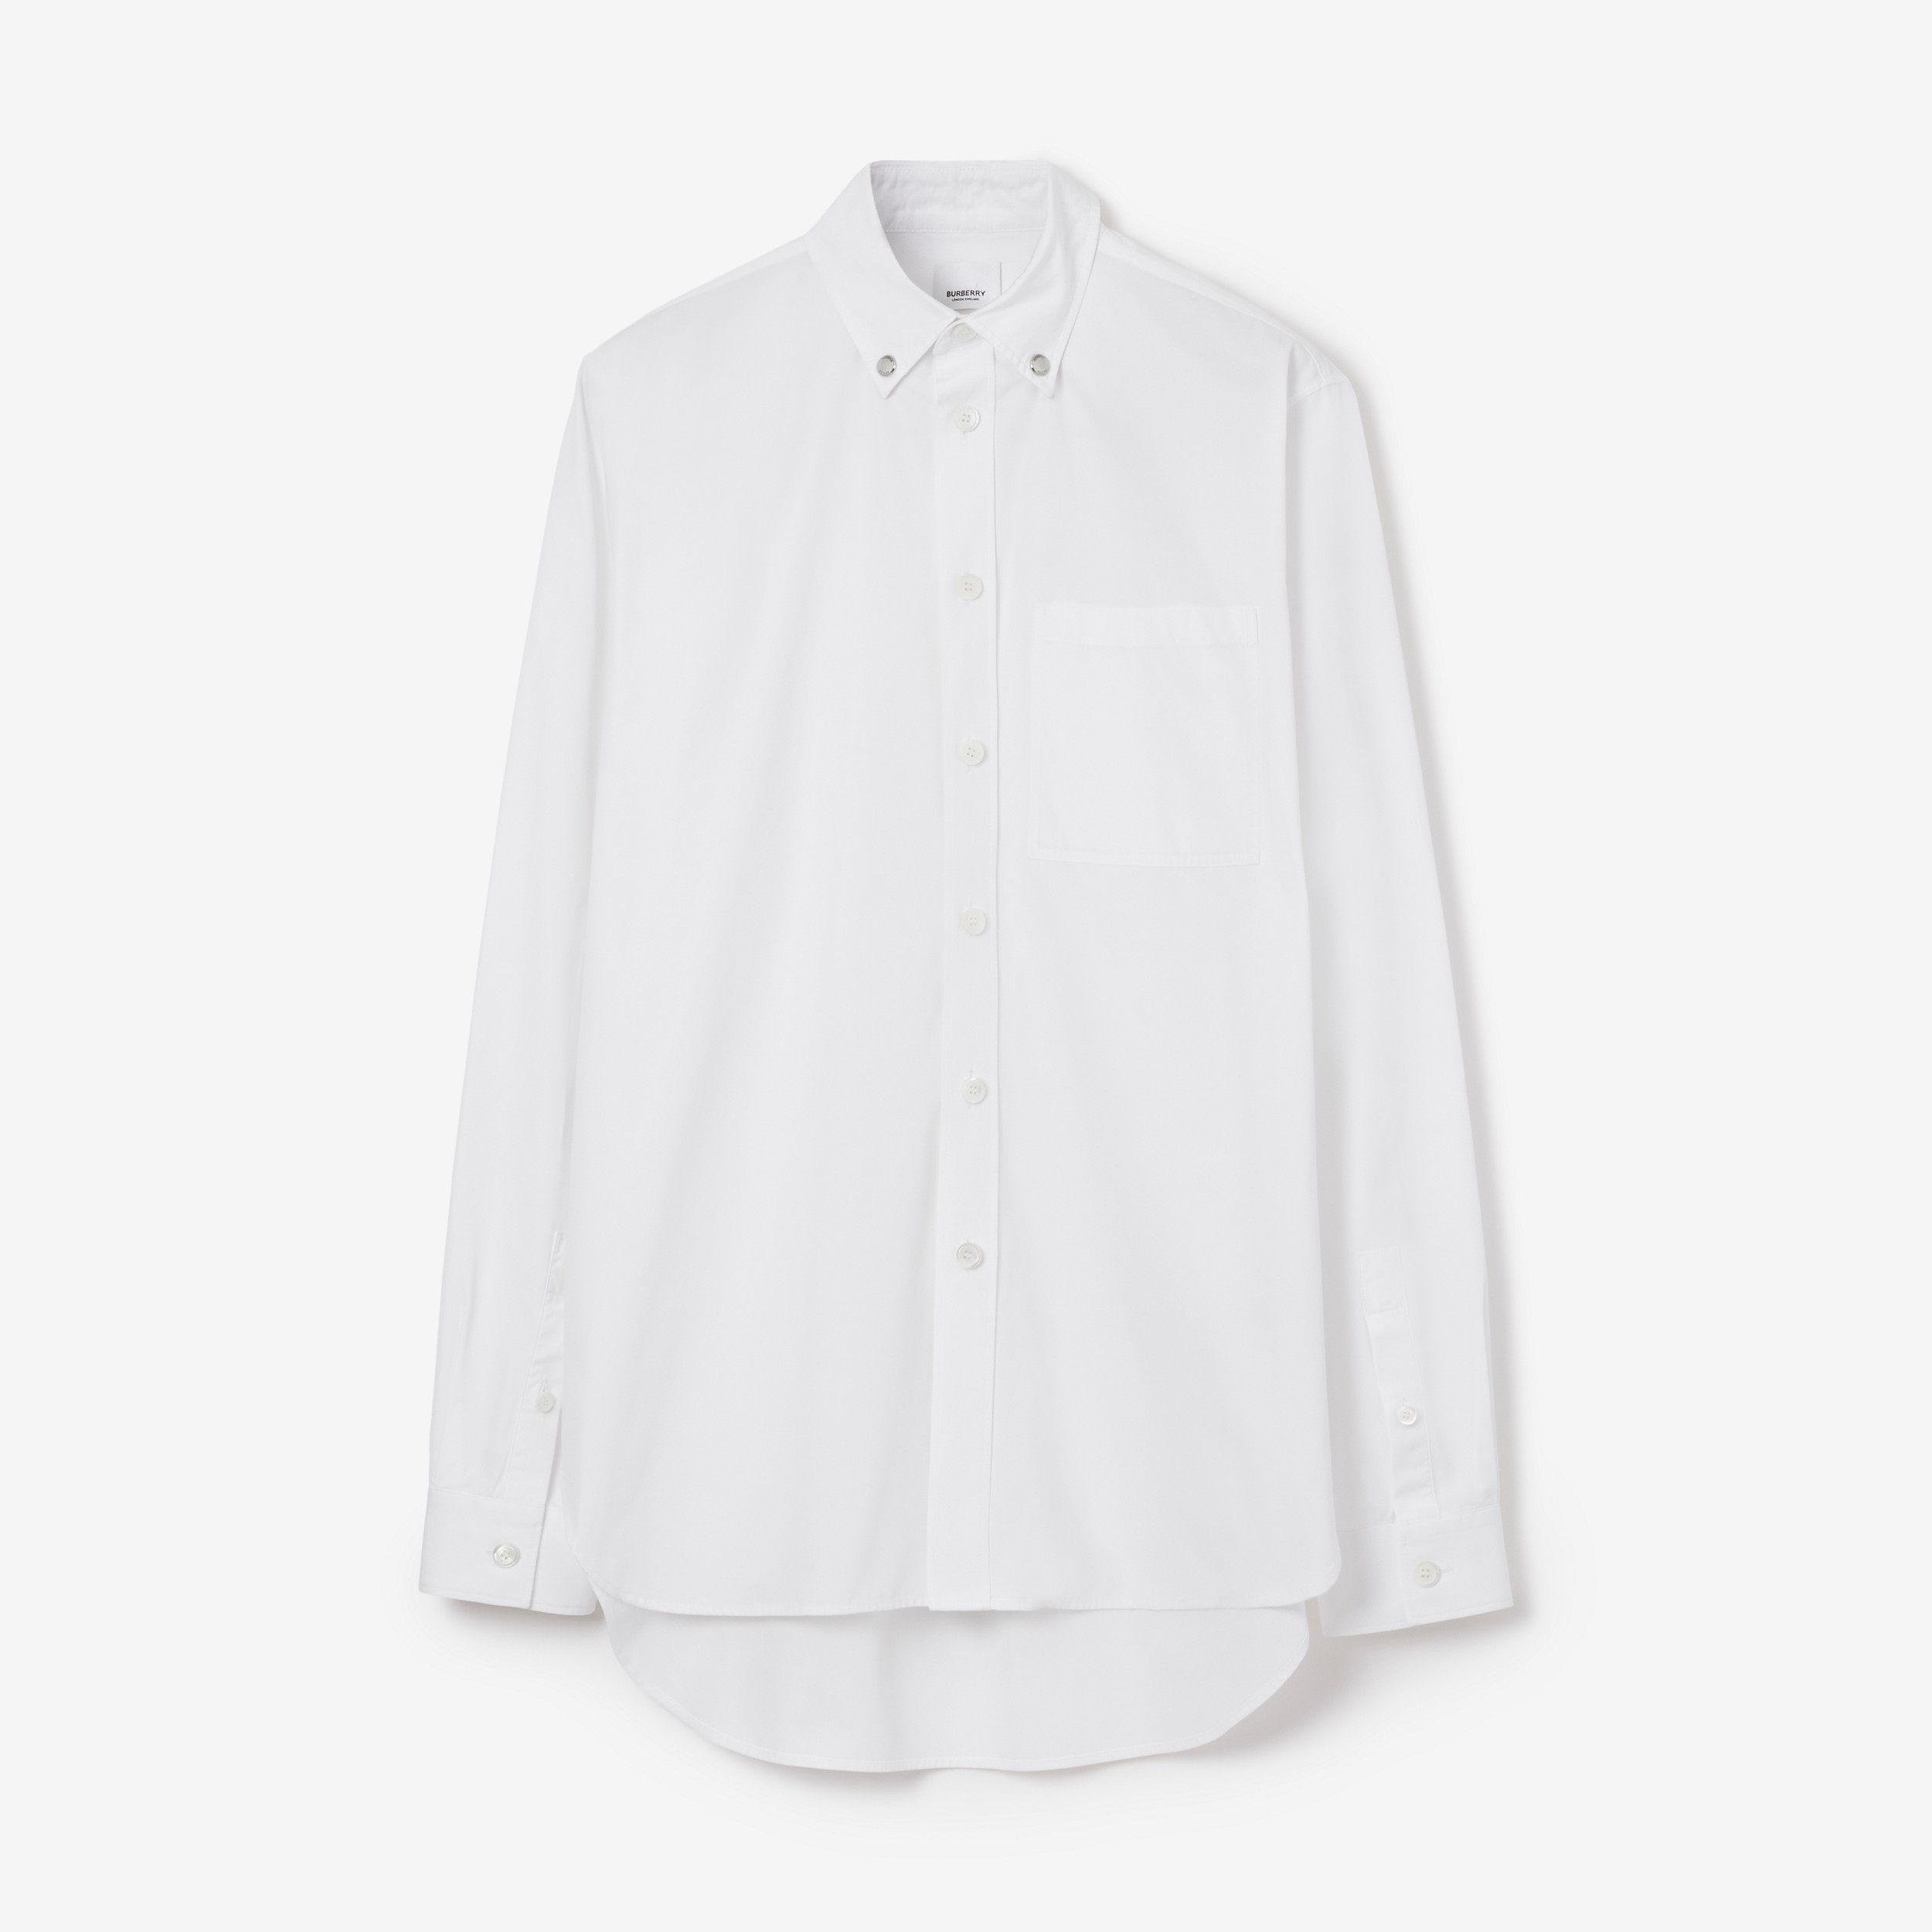 Baumwollpopelin-Hemd mit Druckknopf-Kragen (Weiß) - Herren | Burberry® - 1